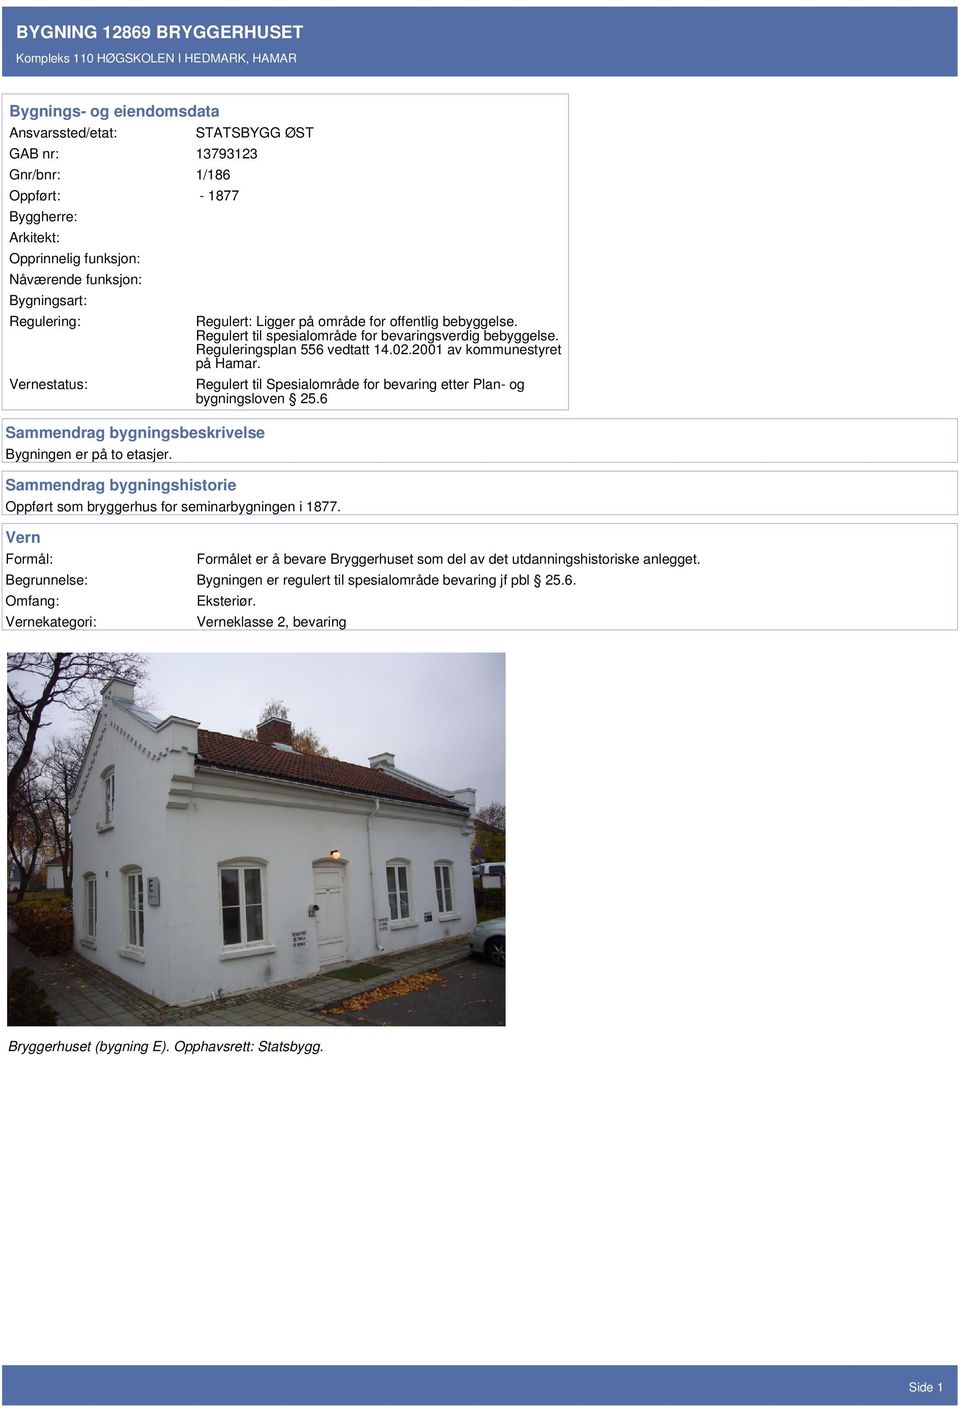 Regulert til spesialområde for bevaringsverdig bebyggelse. Reguleringsplan 556 vedtatt 14.02.2001 av kommunestyret på Hamar.